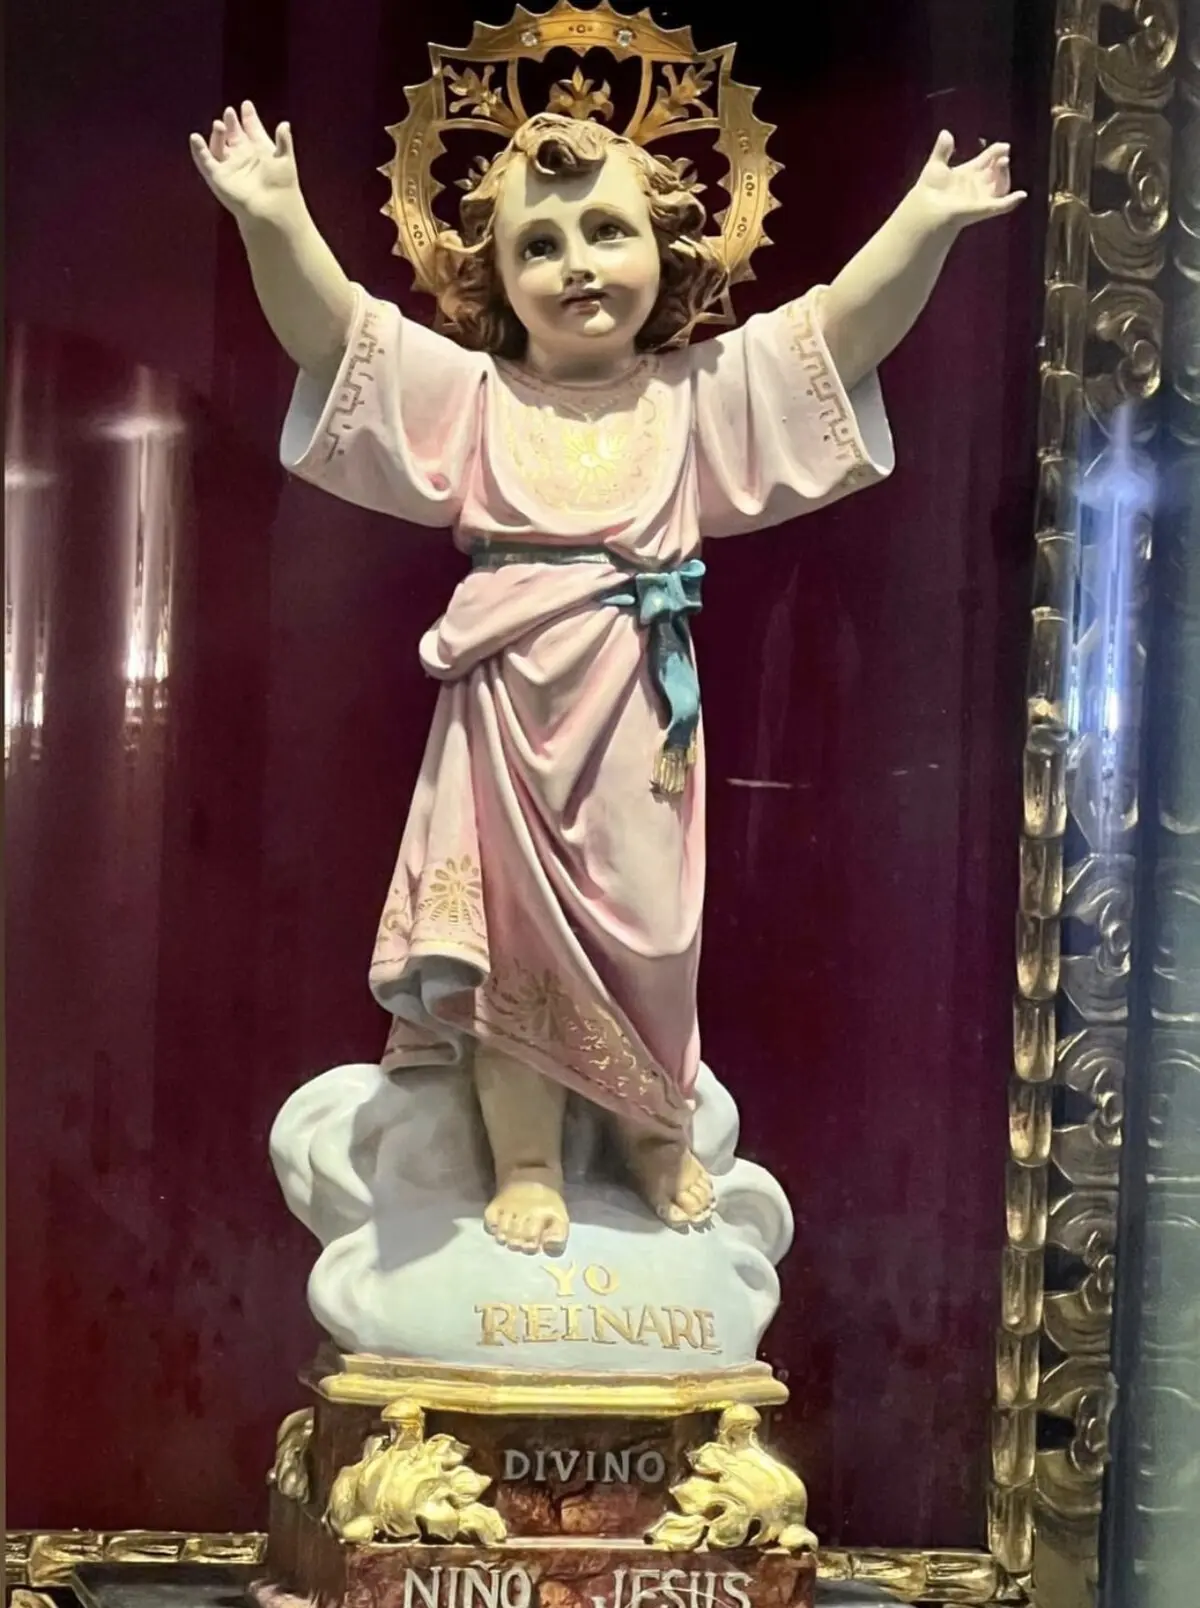 niño jesus de policarbonato - Cuándo es el cumpleaños del Divino Niño